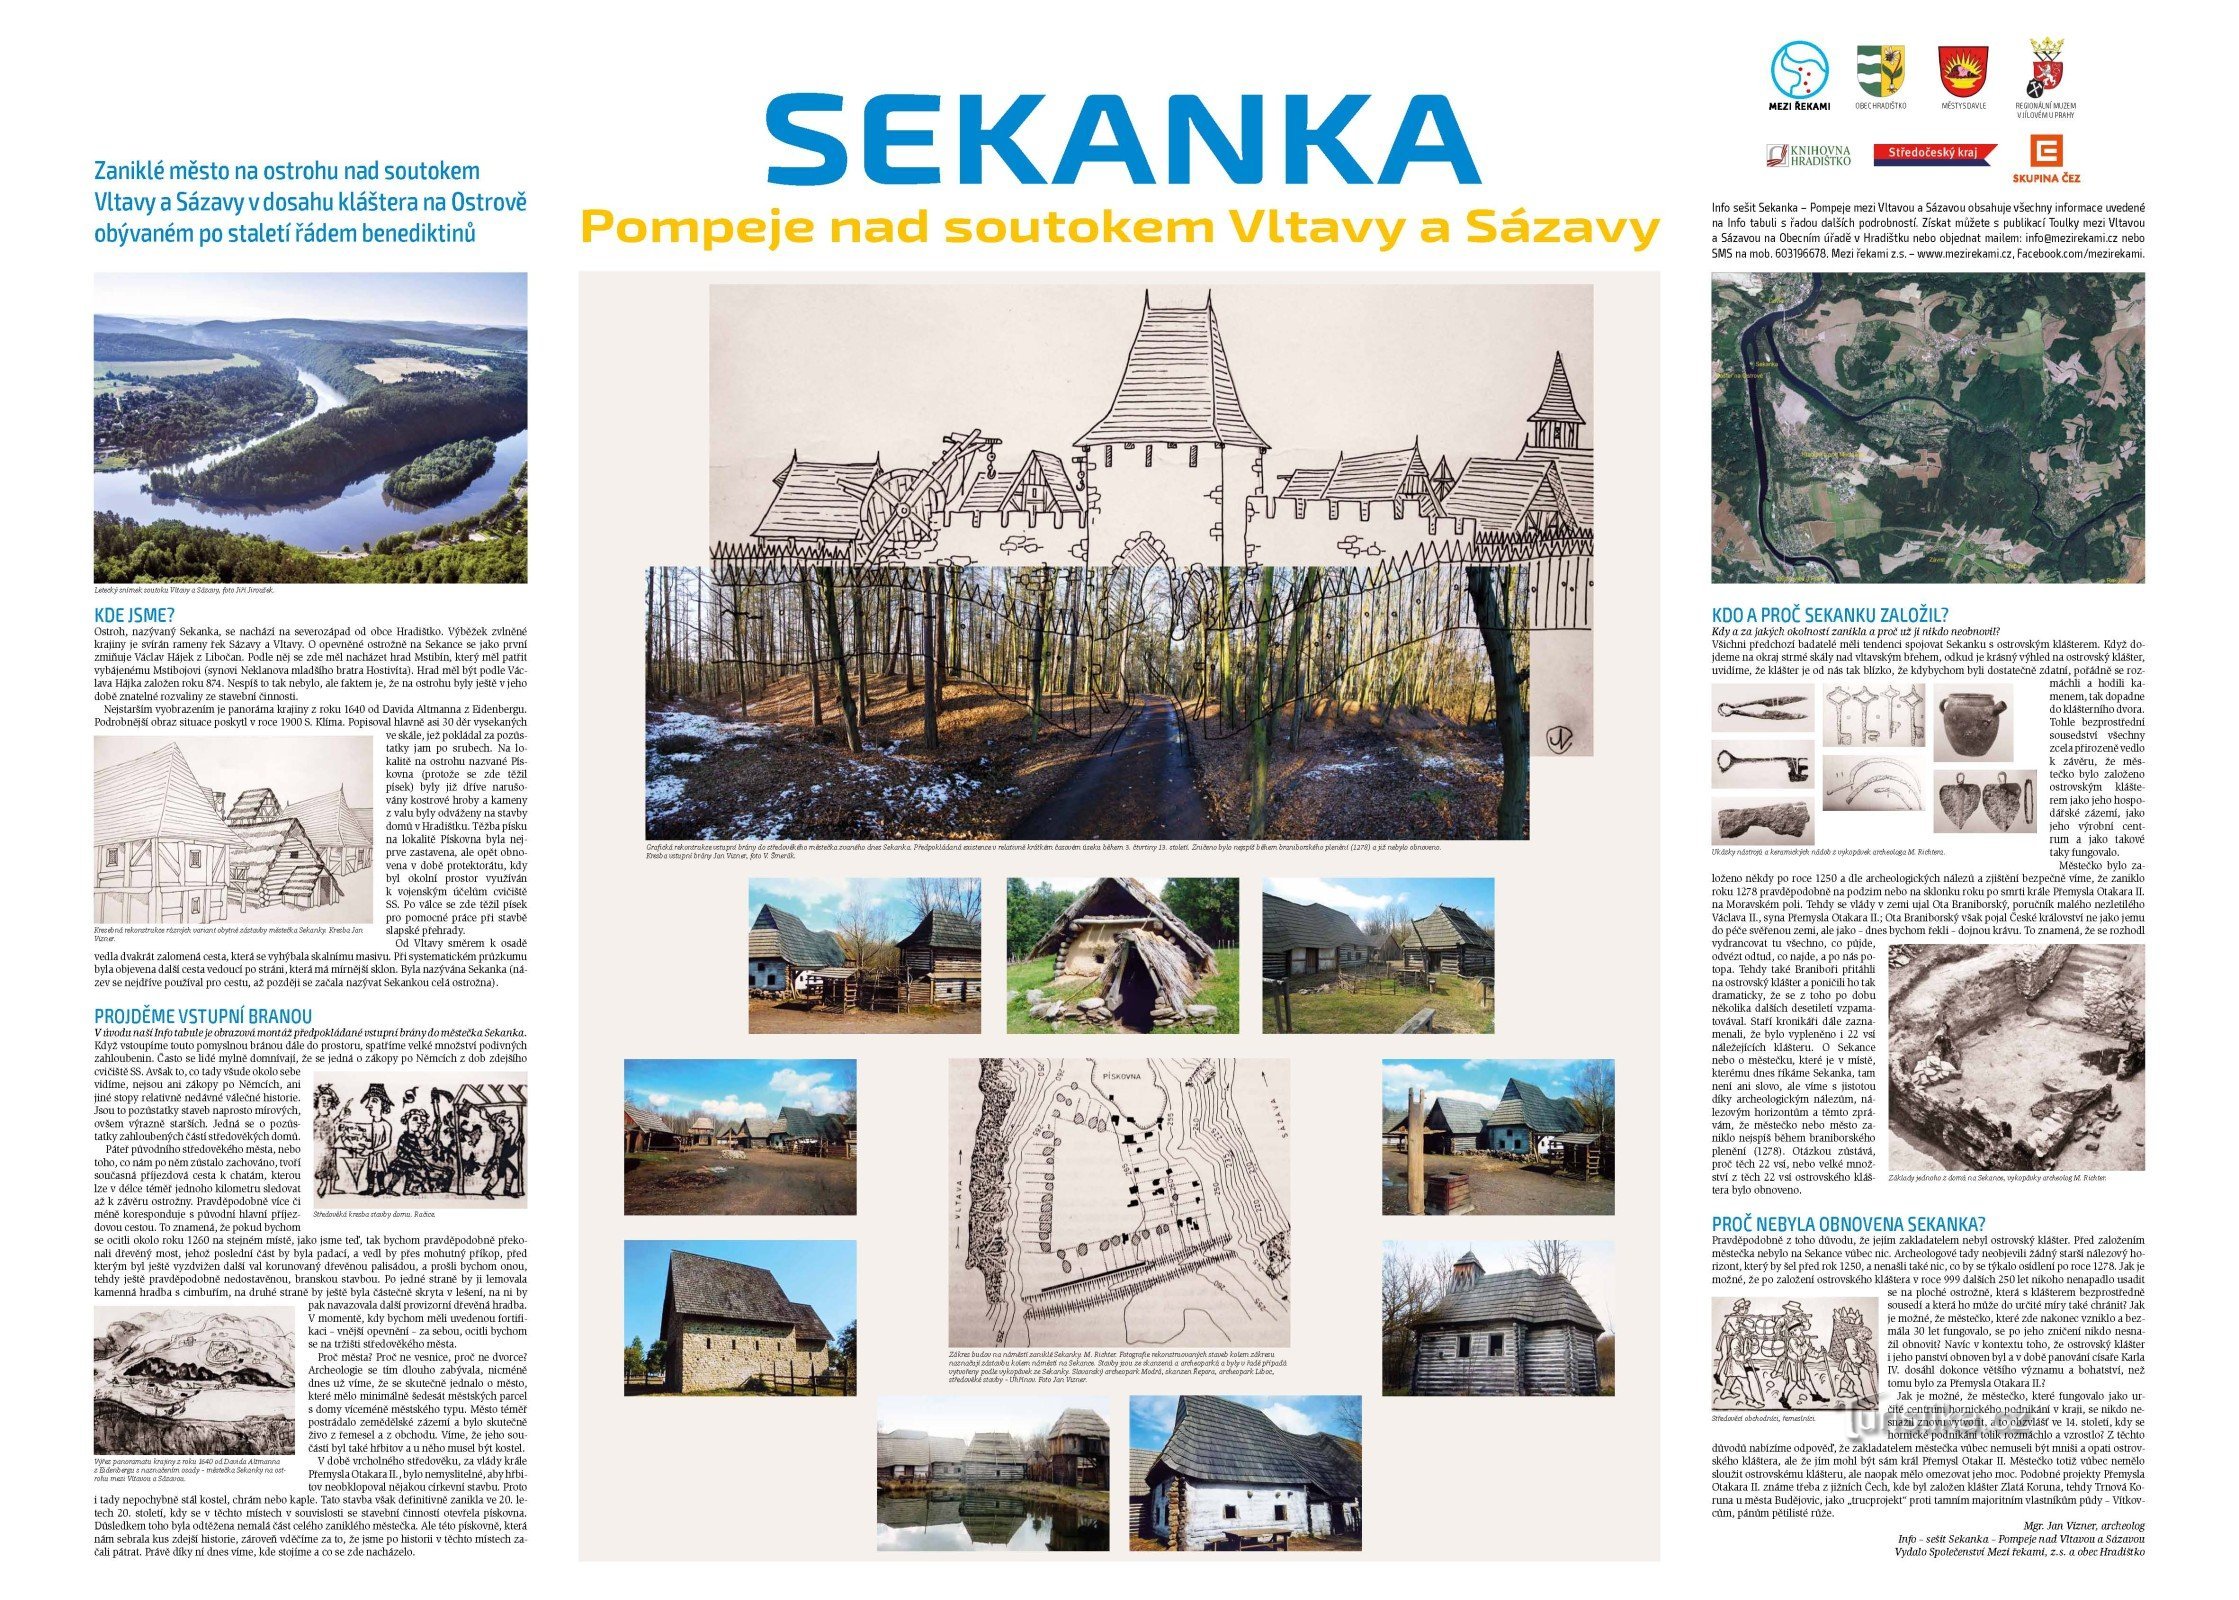 Infopanel med Sekankas historie